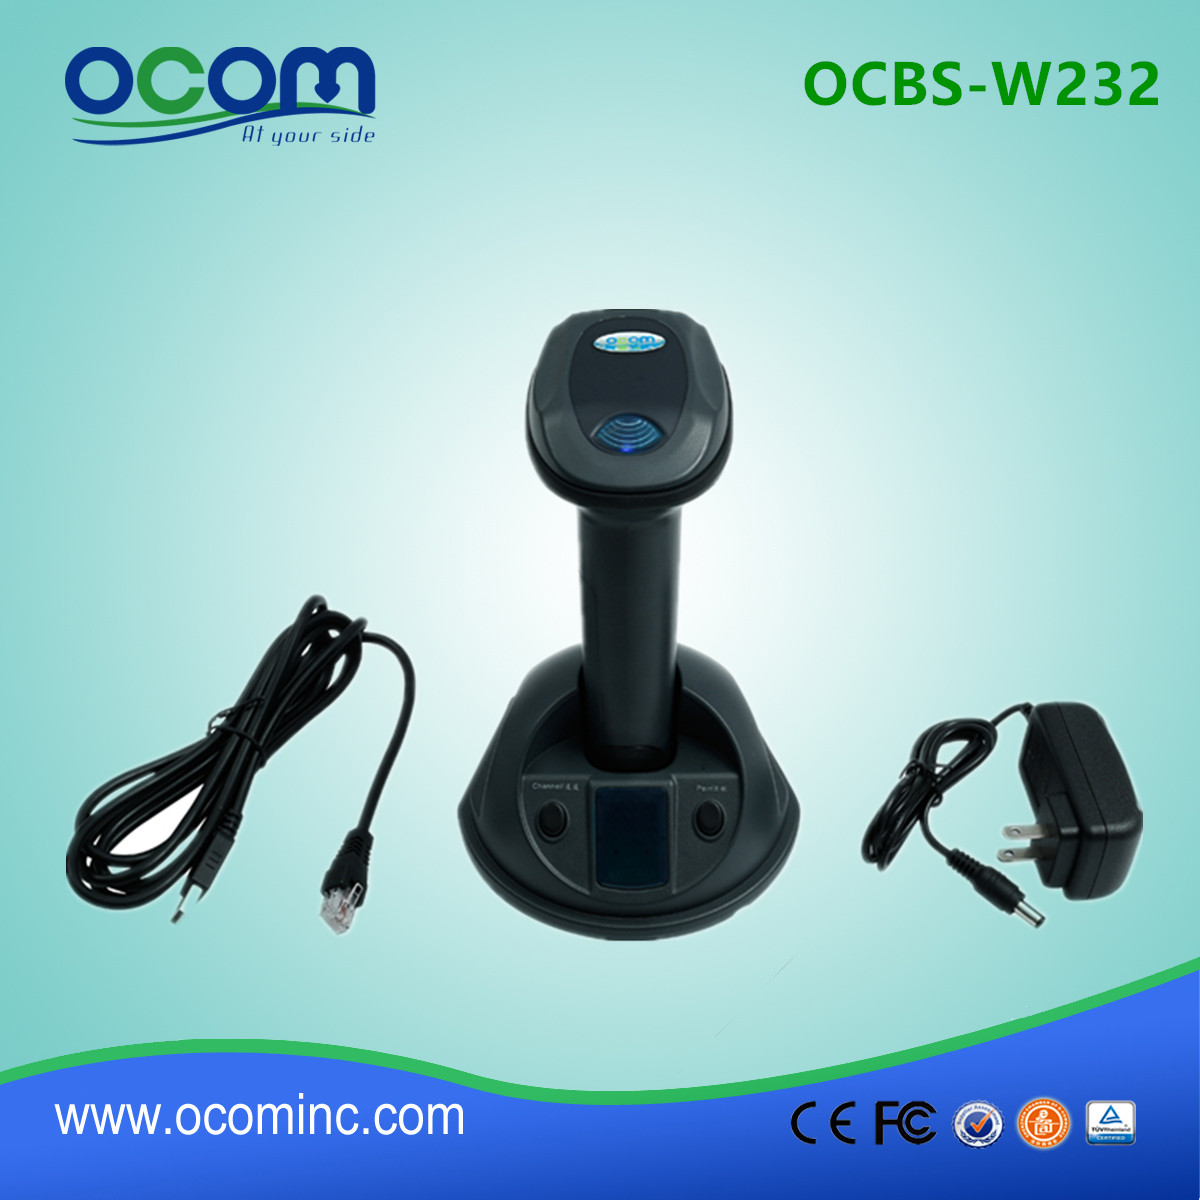 (OCBS-W232) Escáner de código de barras inalámbrico 2D con función Bluetooth y 433MHz